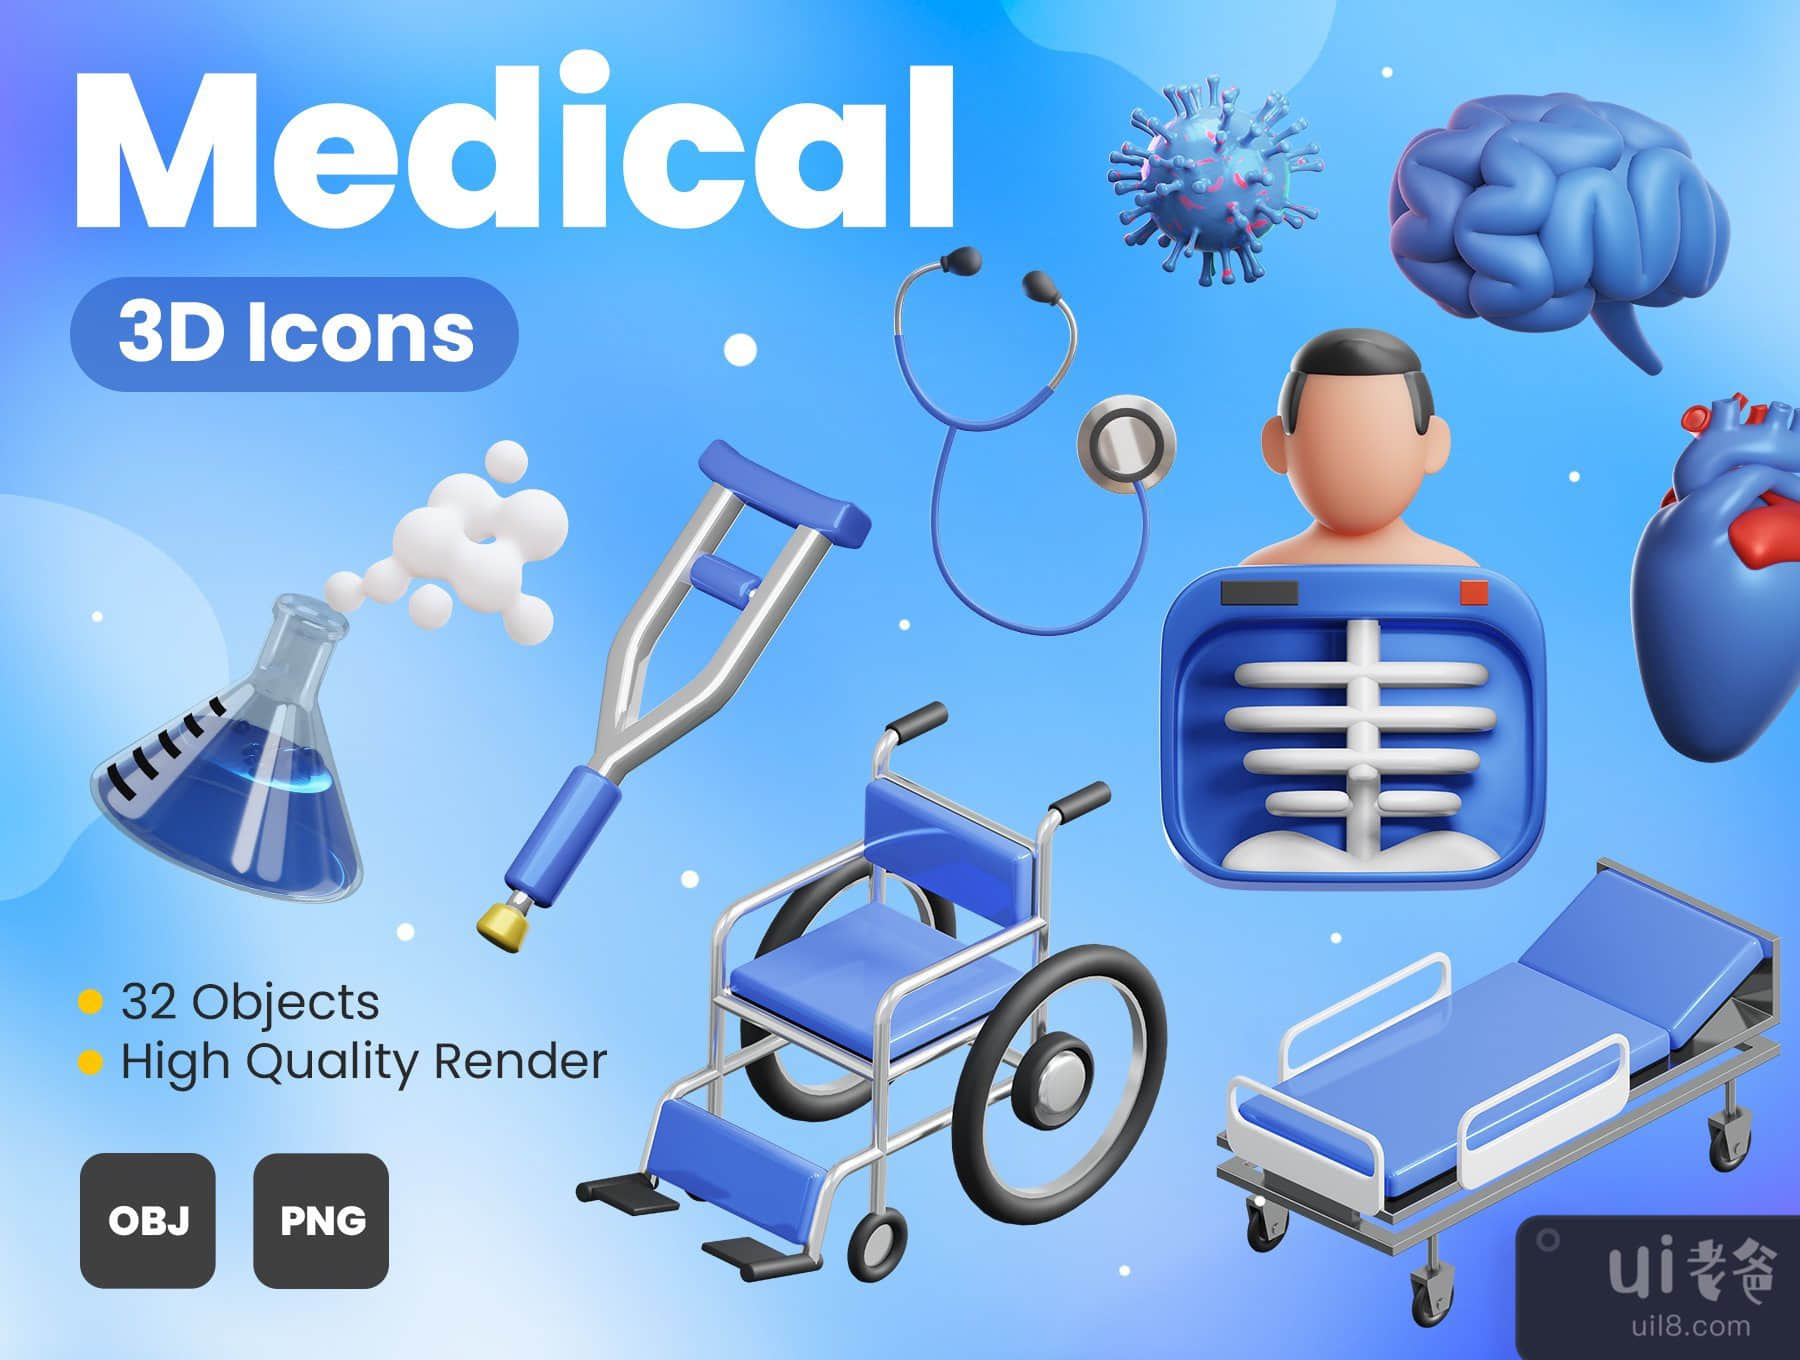 医疗3D图标 (Medical 3D Icons)插图